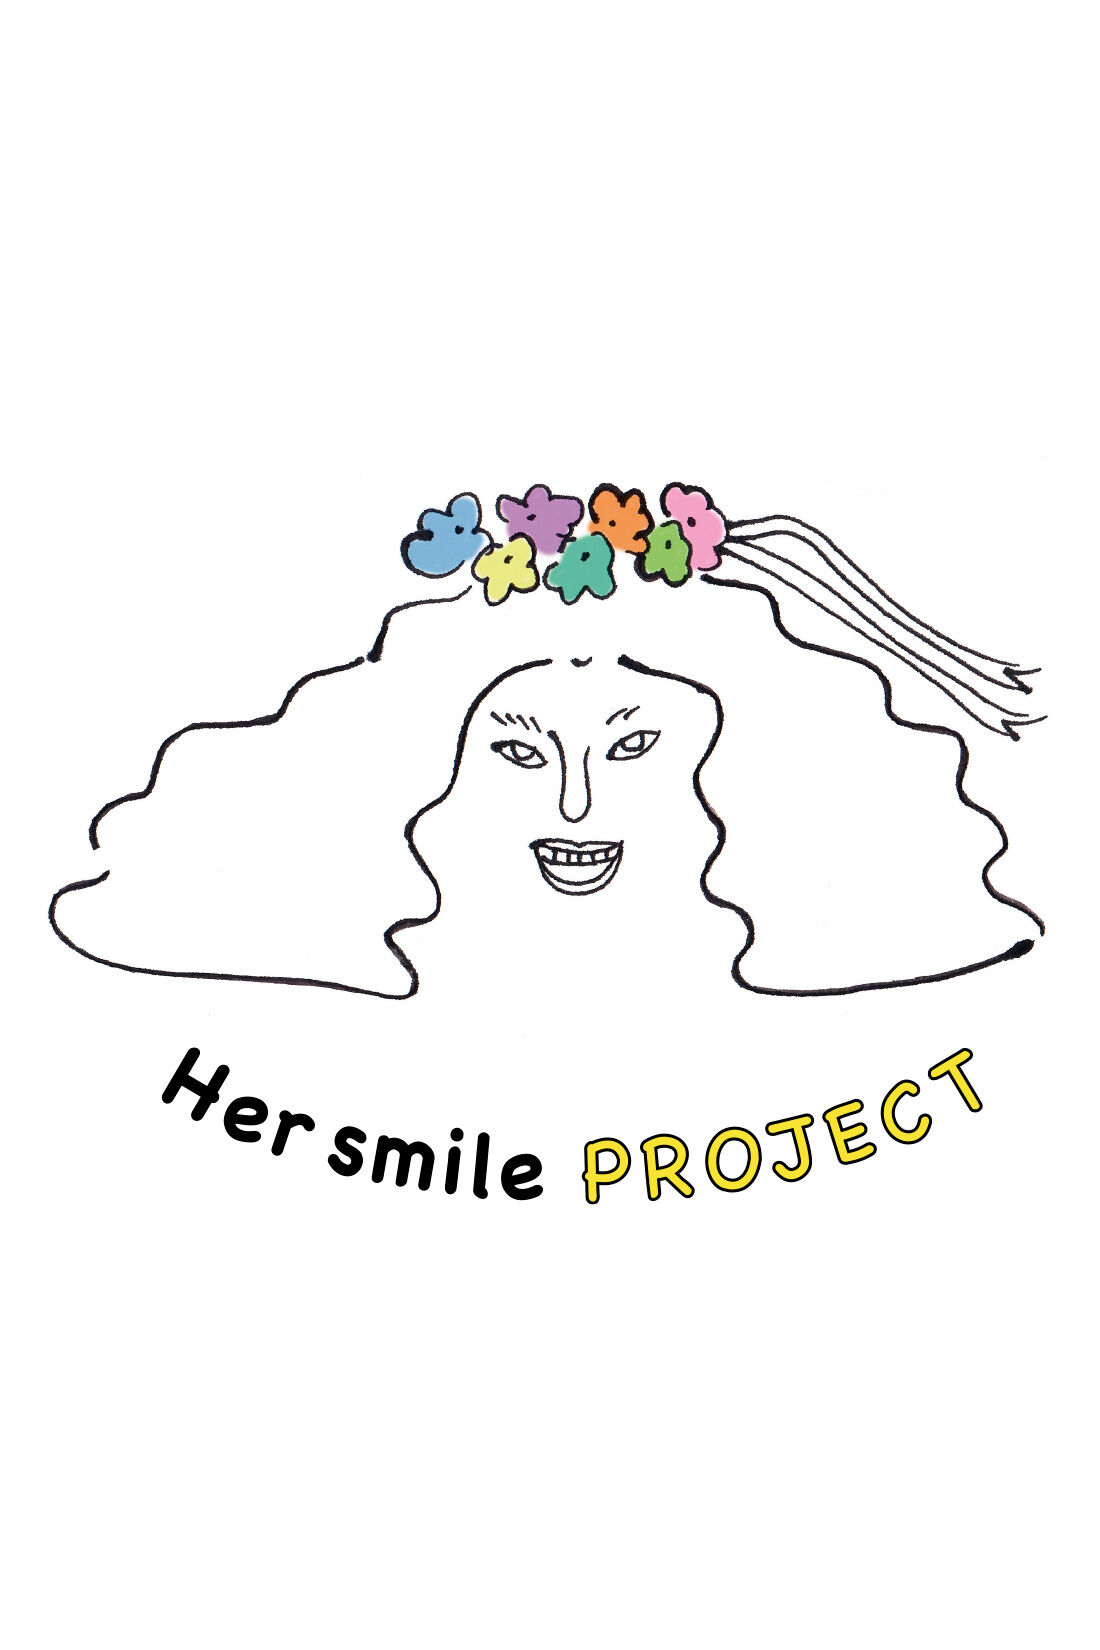 Real Stock|Her smileプロジェクト IEDIT[イディット]　Made in India 天然石とガラスビーズの繊細ロングネックレス〈カーネリアン〉|女性のしあわせや笑顔は、子どもの未来や家族・社会を豊かにすることに繋がっているはず。だから、世界中の女性をしあわせに、笑顔があふれる社会にしたい。そんな思いをカタチに、IEDITから、新しく『Her smile基金プロジェクト』がスタートしました！